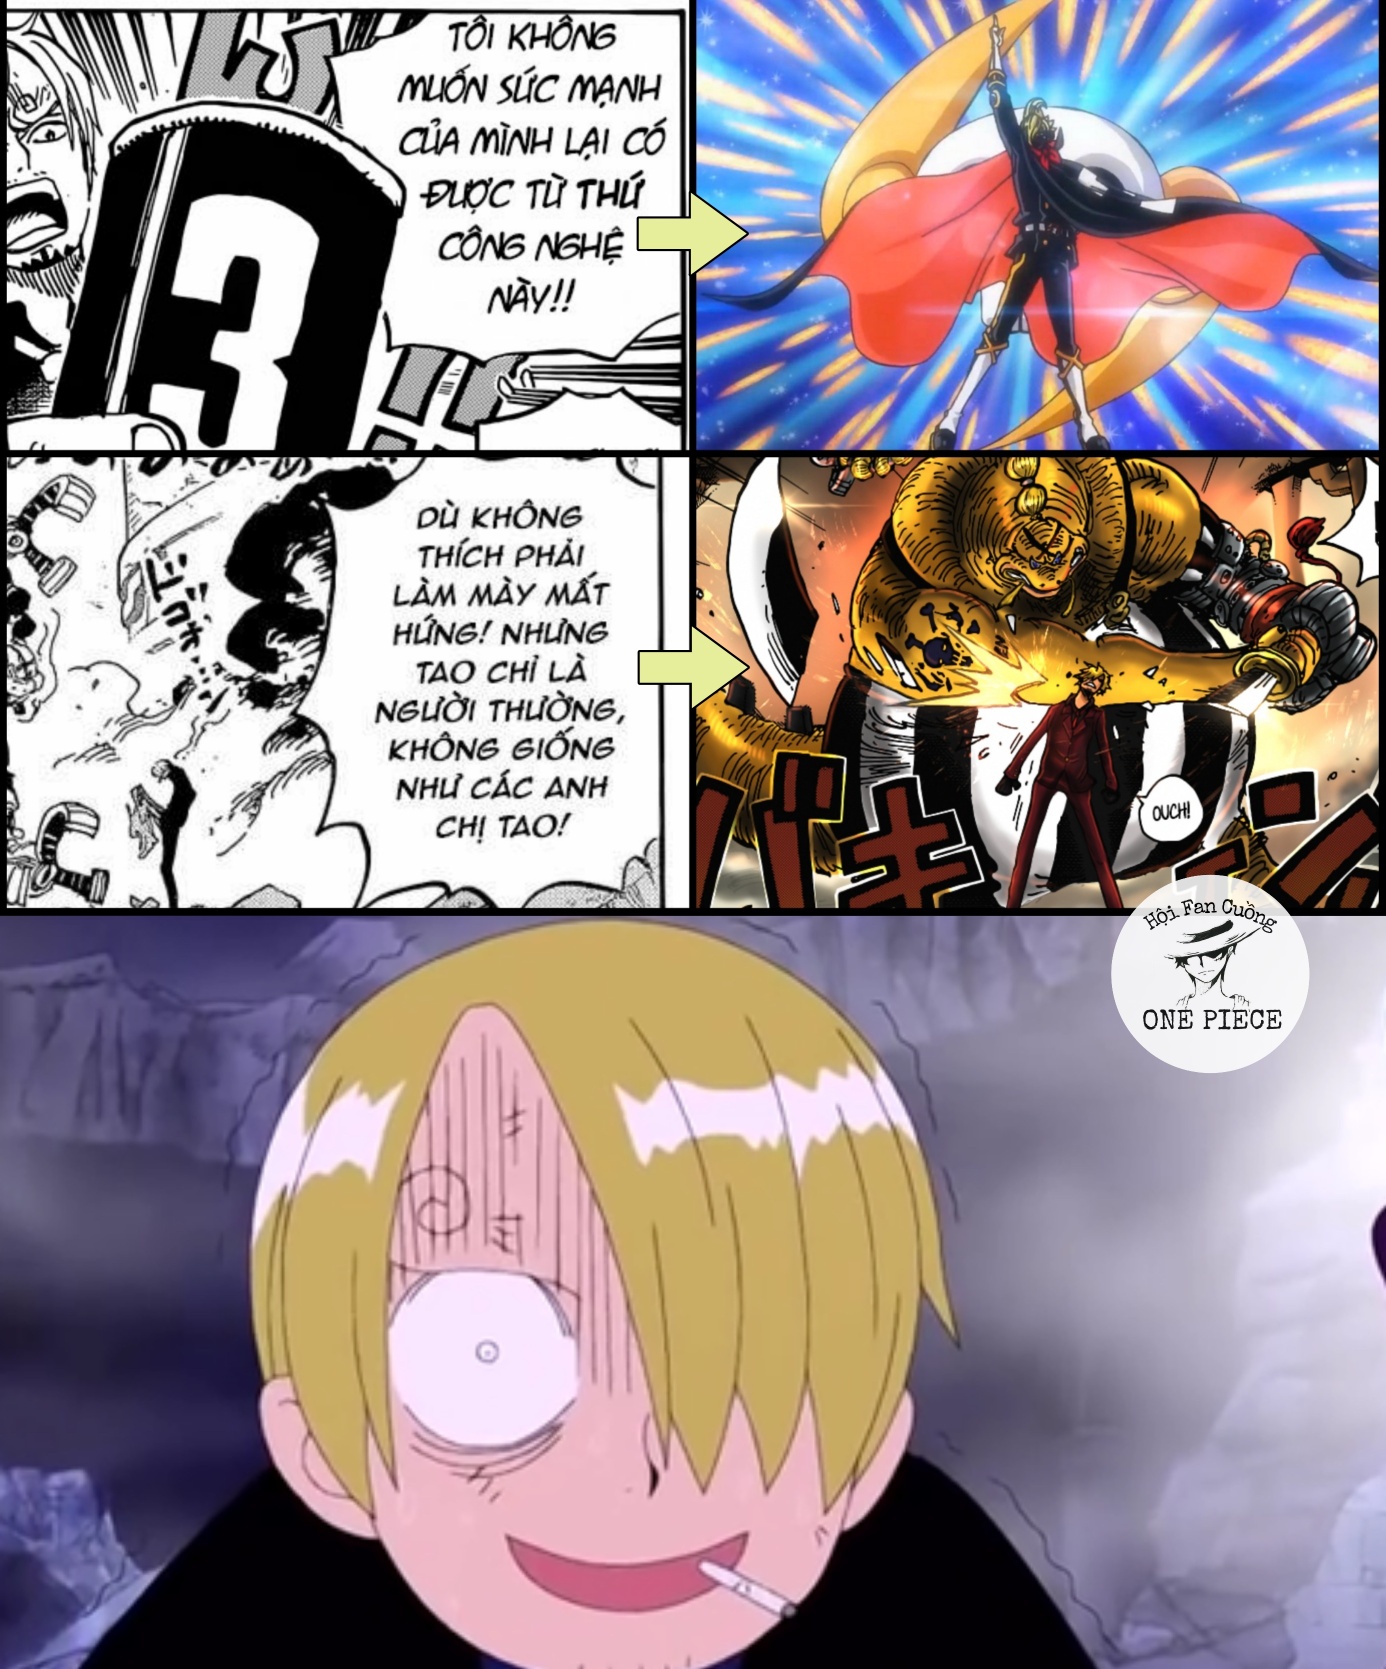 Cười Vỡ Bụng Trước Loạt Ảnh Chế Hài Hước Về Diễn Biến Mới Nhất Của One Piece,  Sức Mạnh Của Sanji Trở Thành 